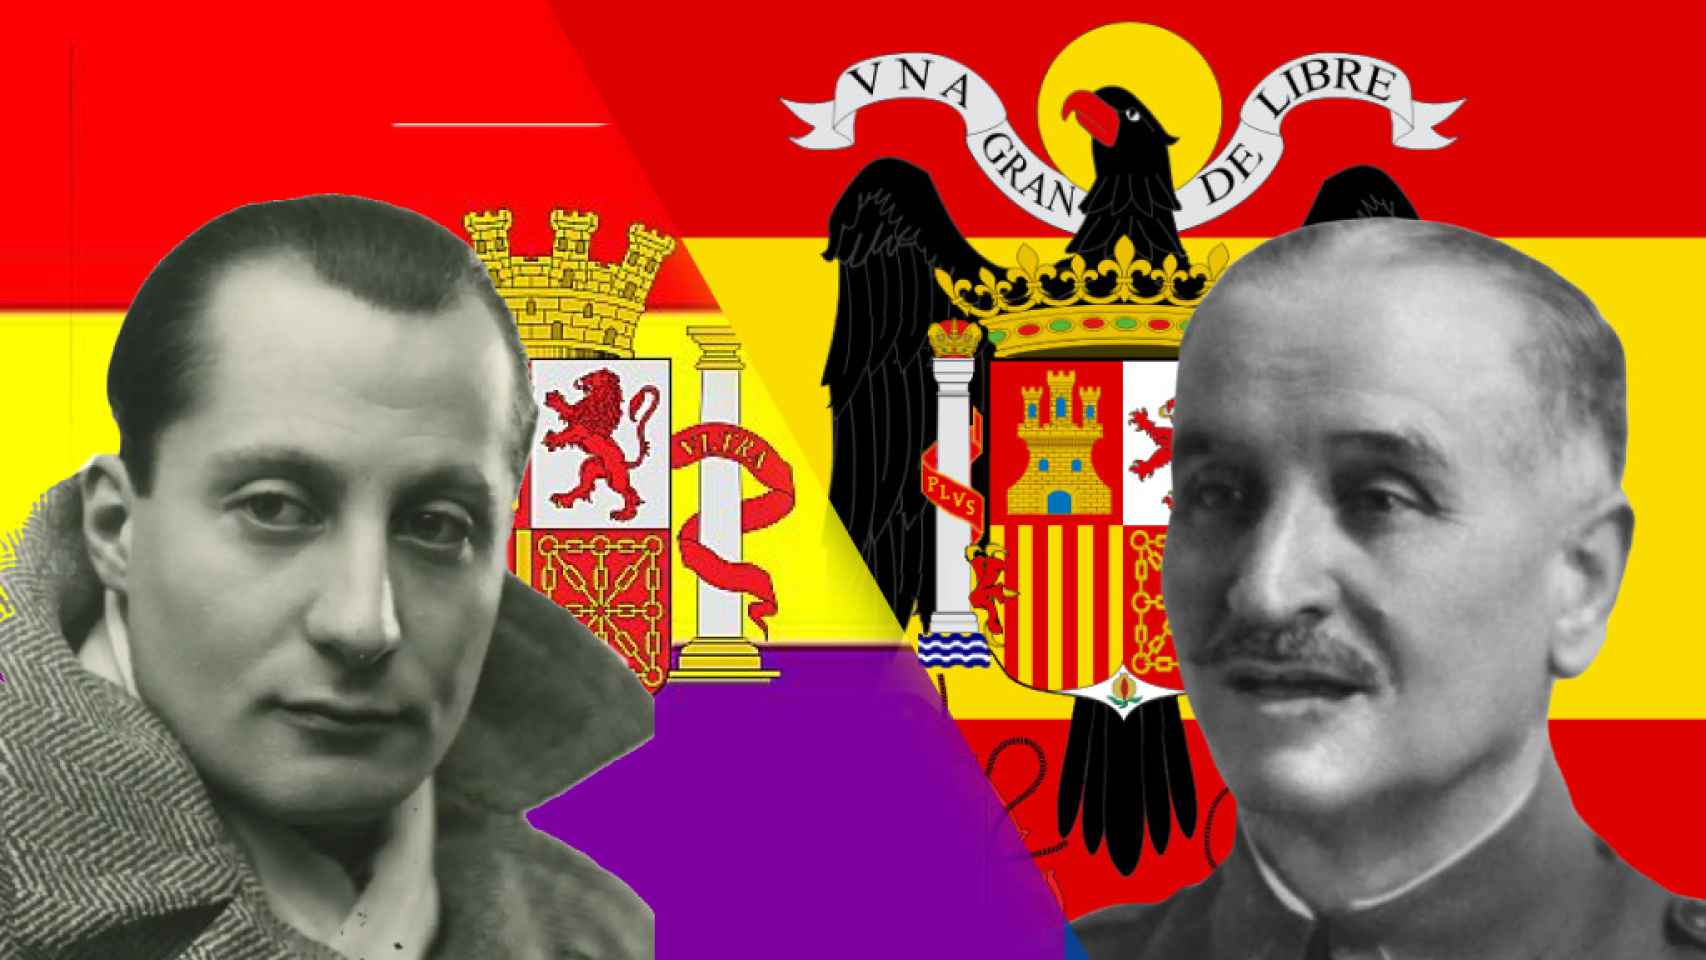 Primo de Rivera y Queipo del LLano sobre las baderas republicana y franquista.